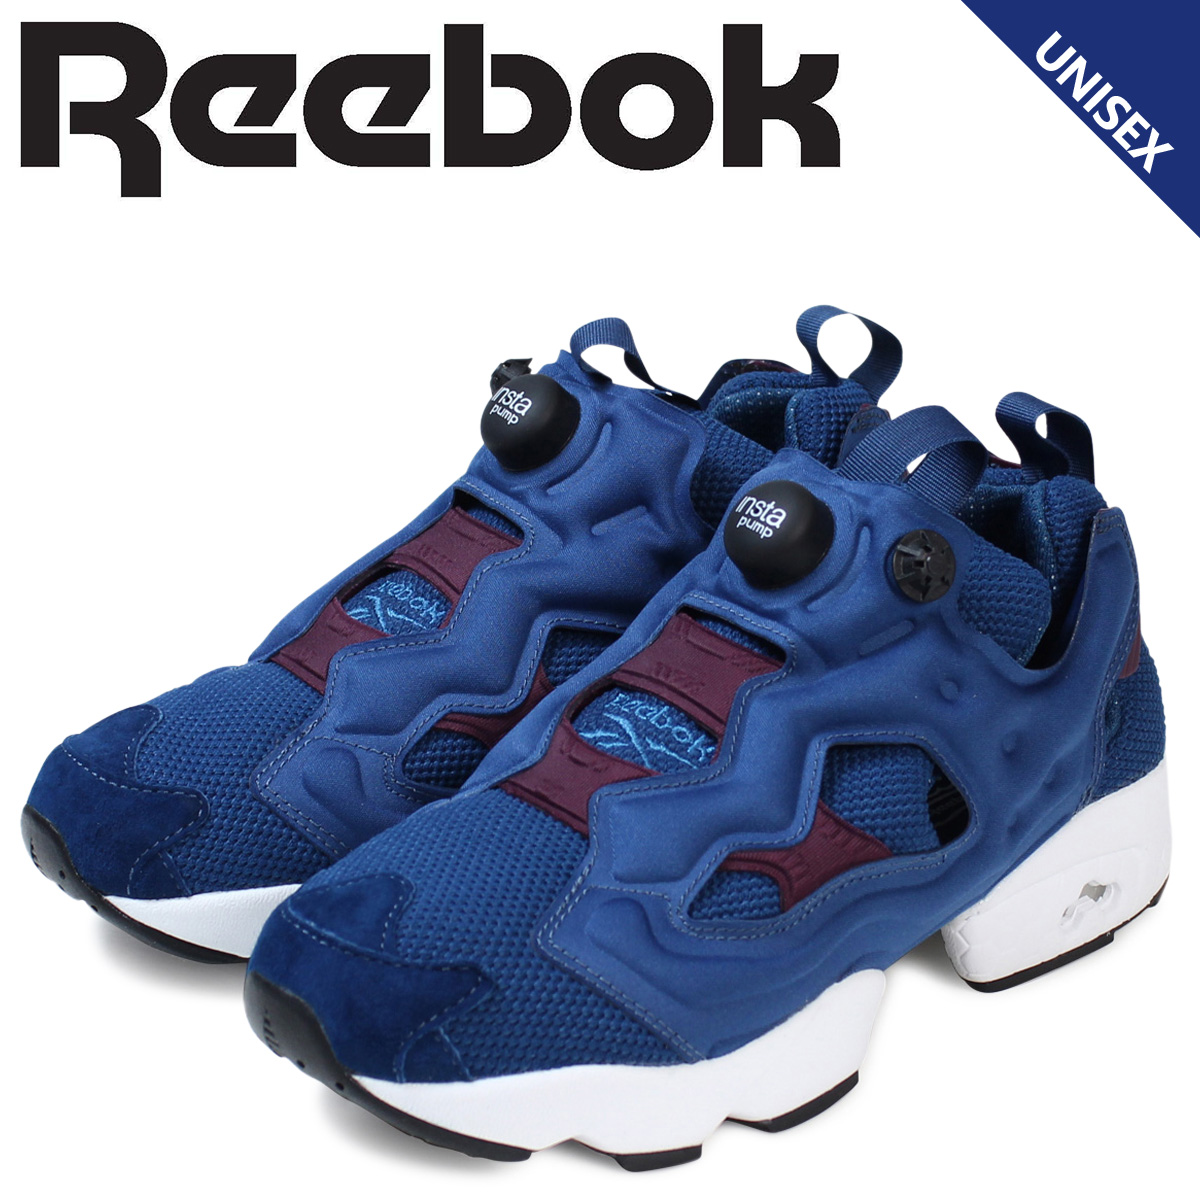 reebok smart shoes